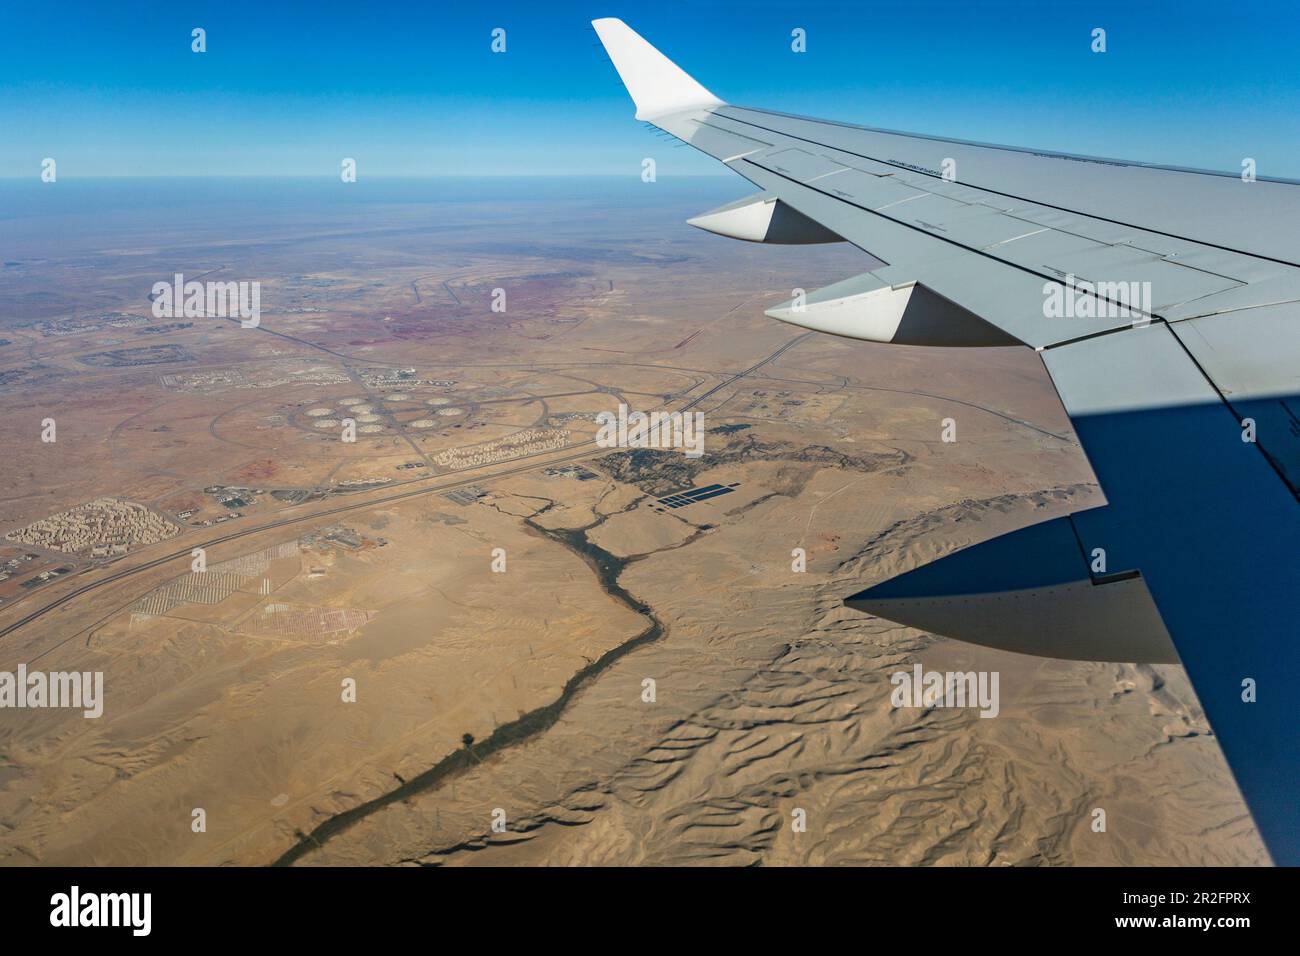 Aerial view of the Arabian Desert, Egypt Stock Photo